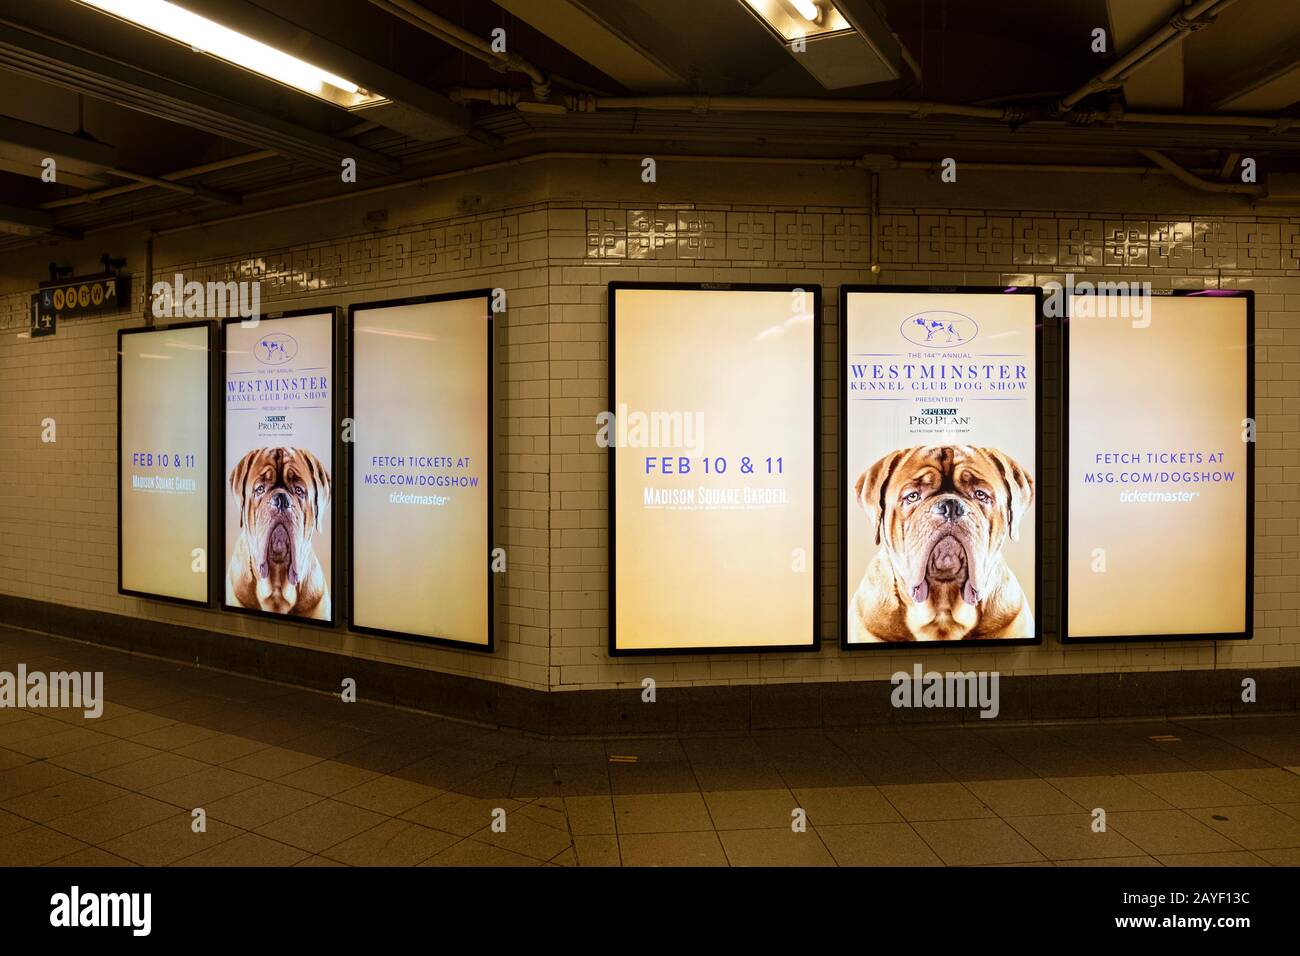 Publicités électroniques haute technologie pour le spectacle de chiens Westminster Kennel Club. À la station de métro Union Square 14ème Street à Manhattan, New York Banque D'Images